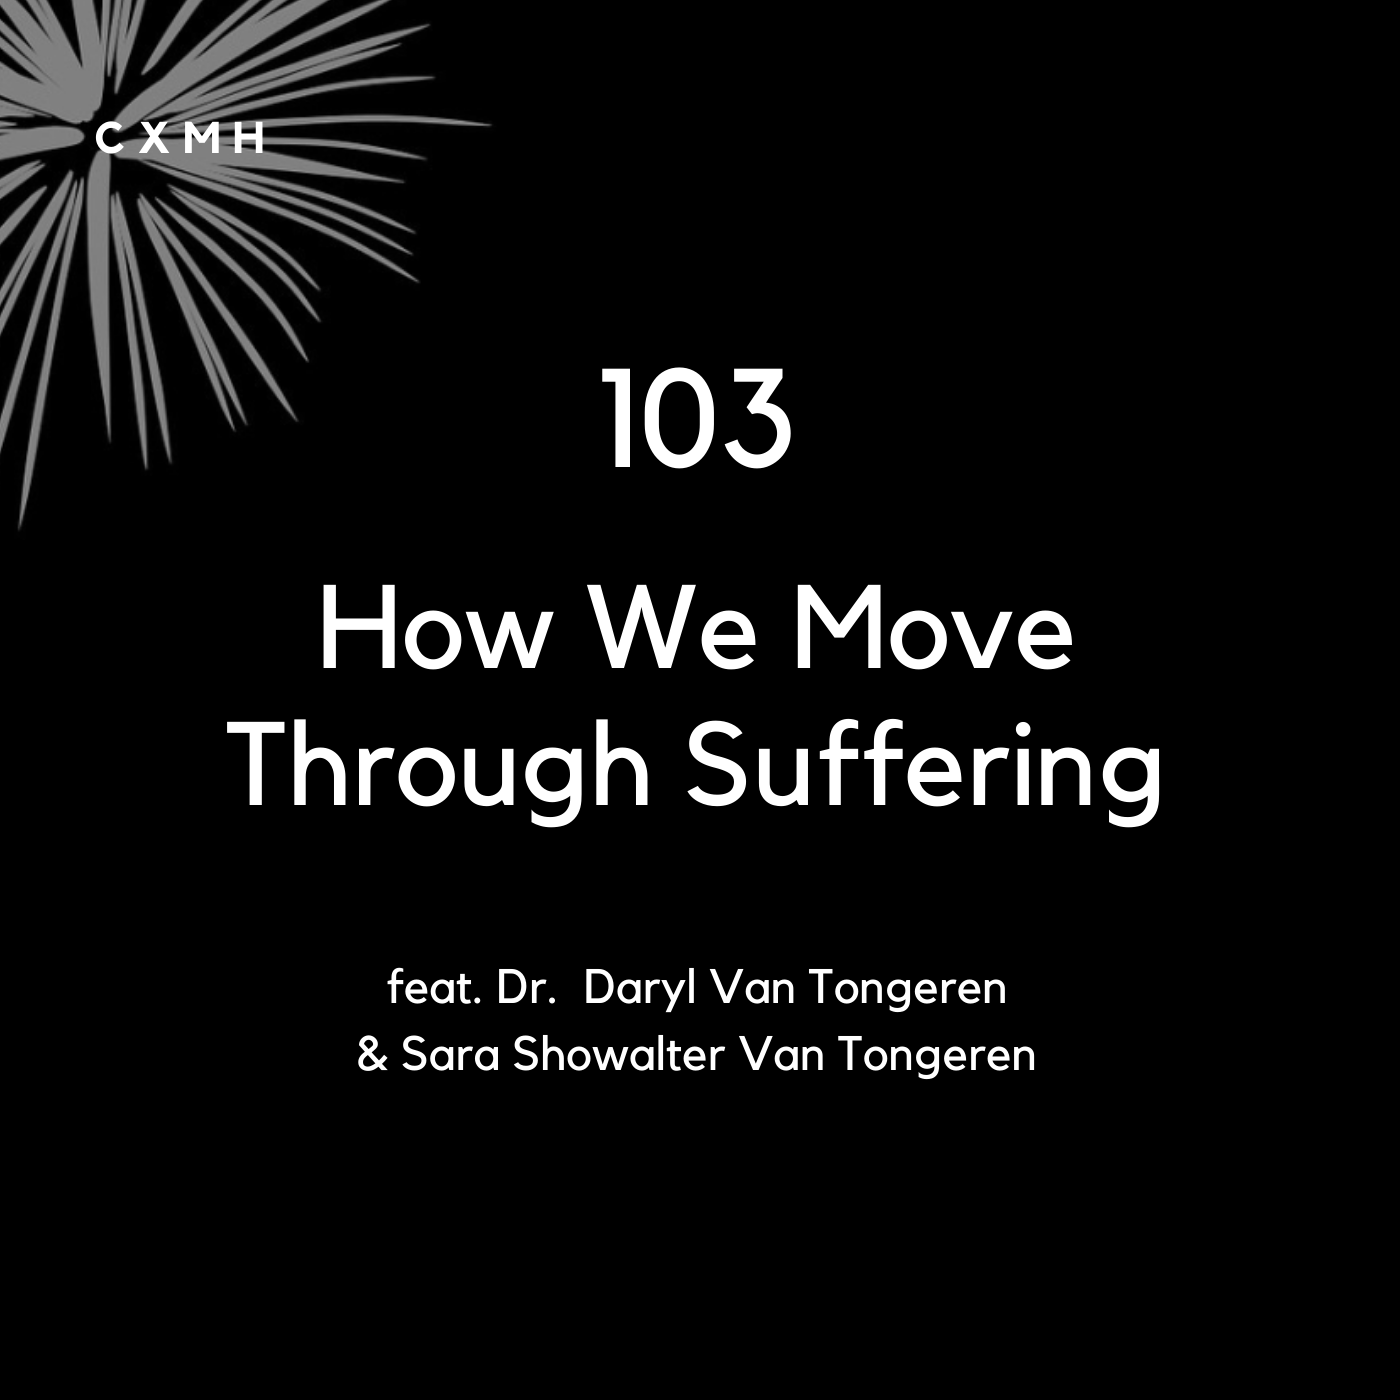 103 - How We Move Through Suffering (feat. Dr. Daryl Van Tongeren & Sara Showalter Van Tongeren)